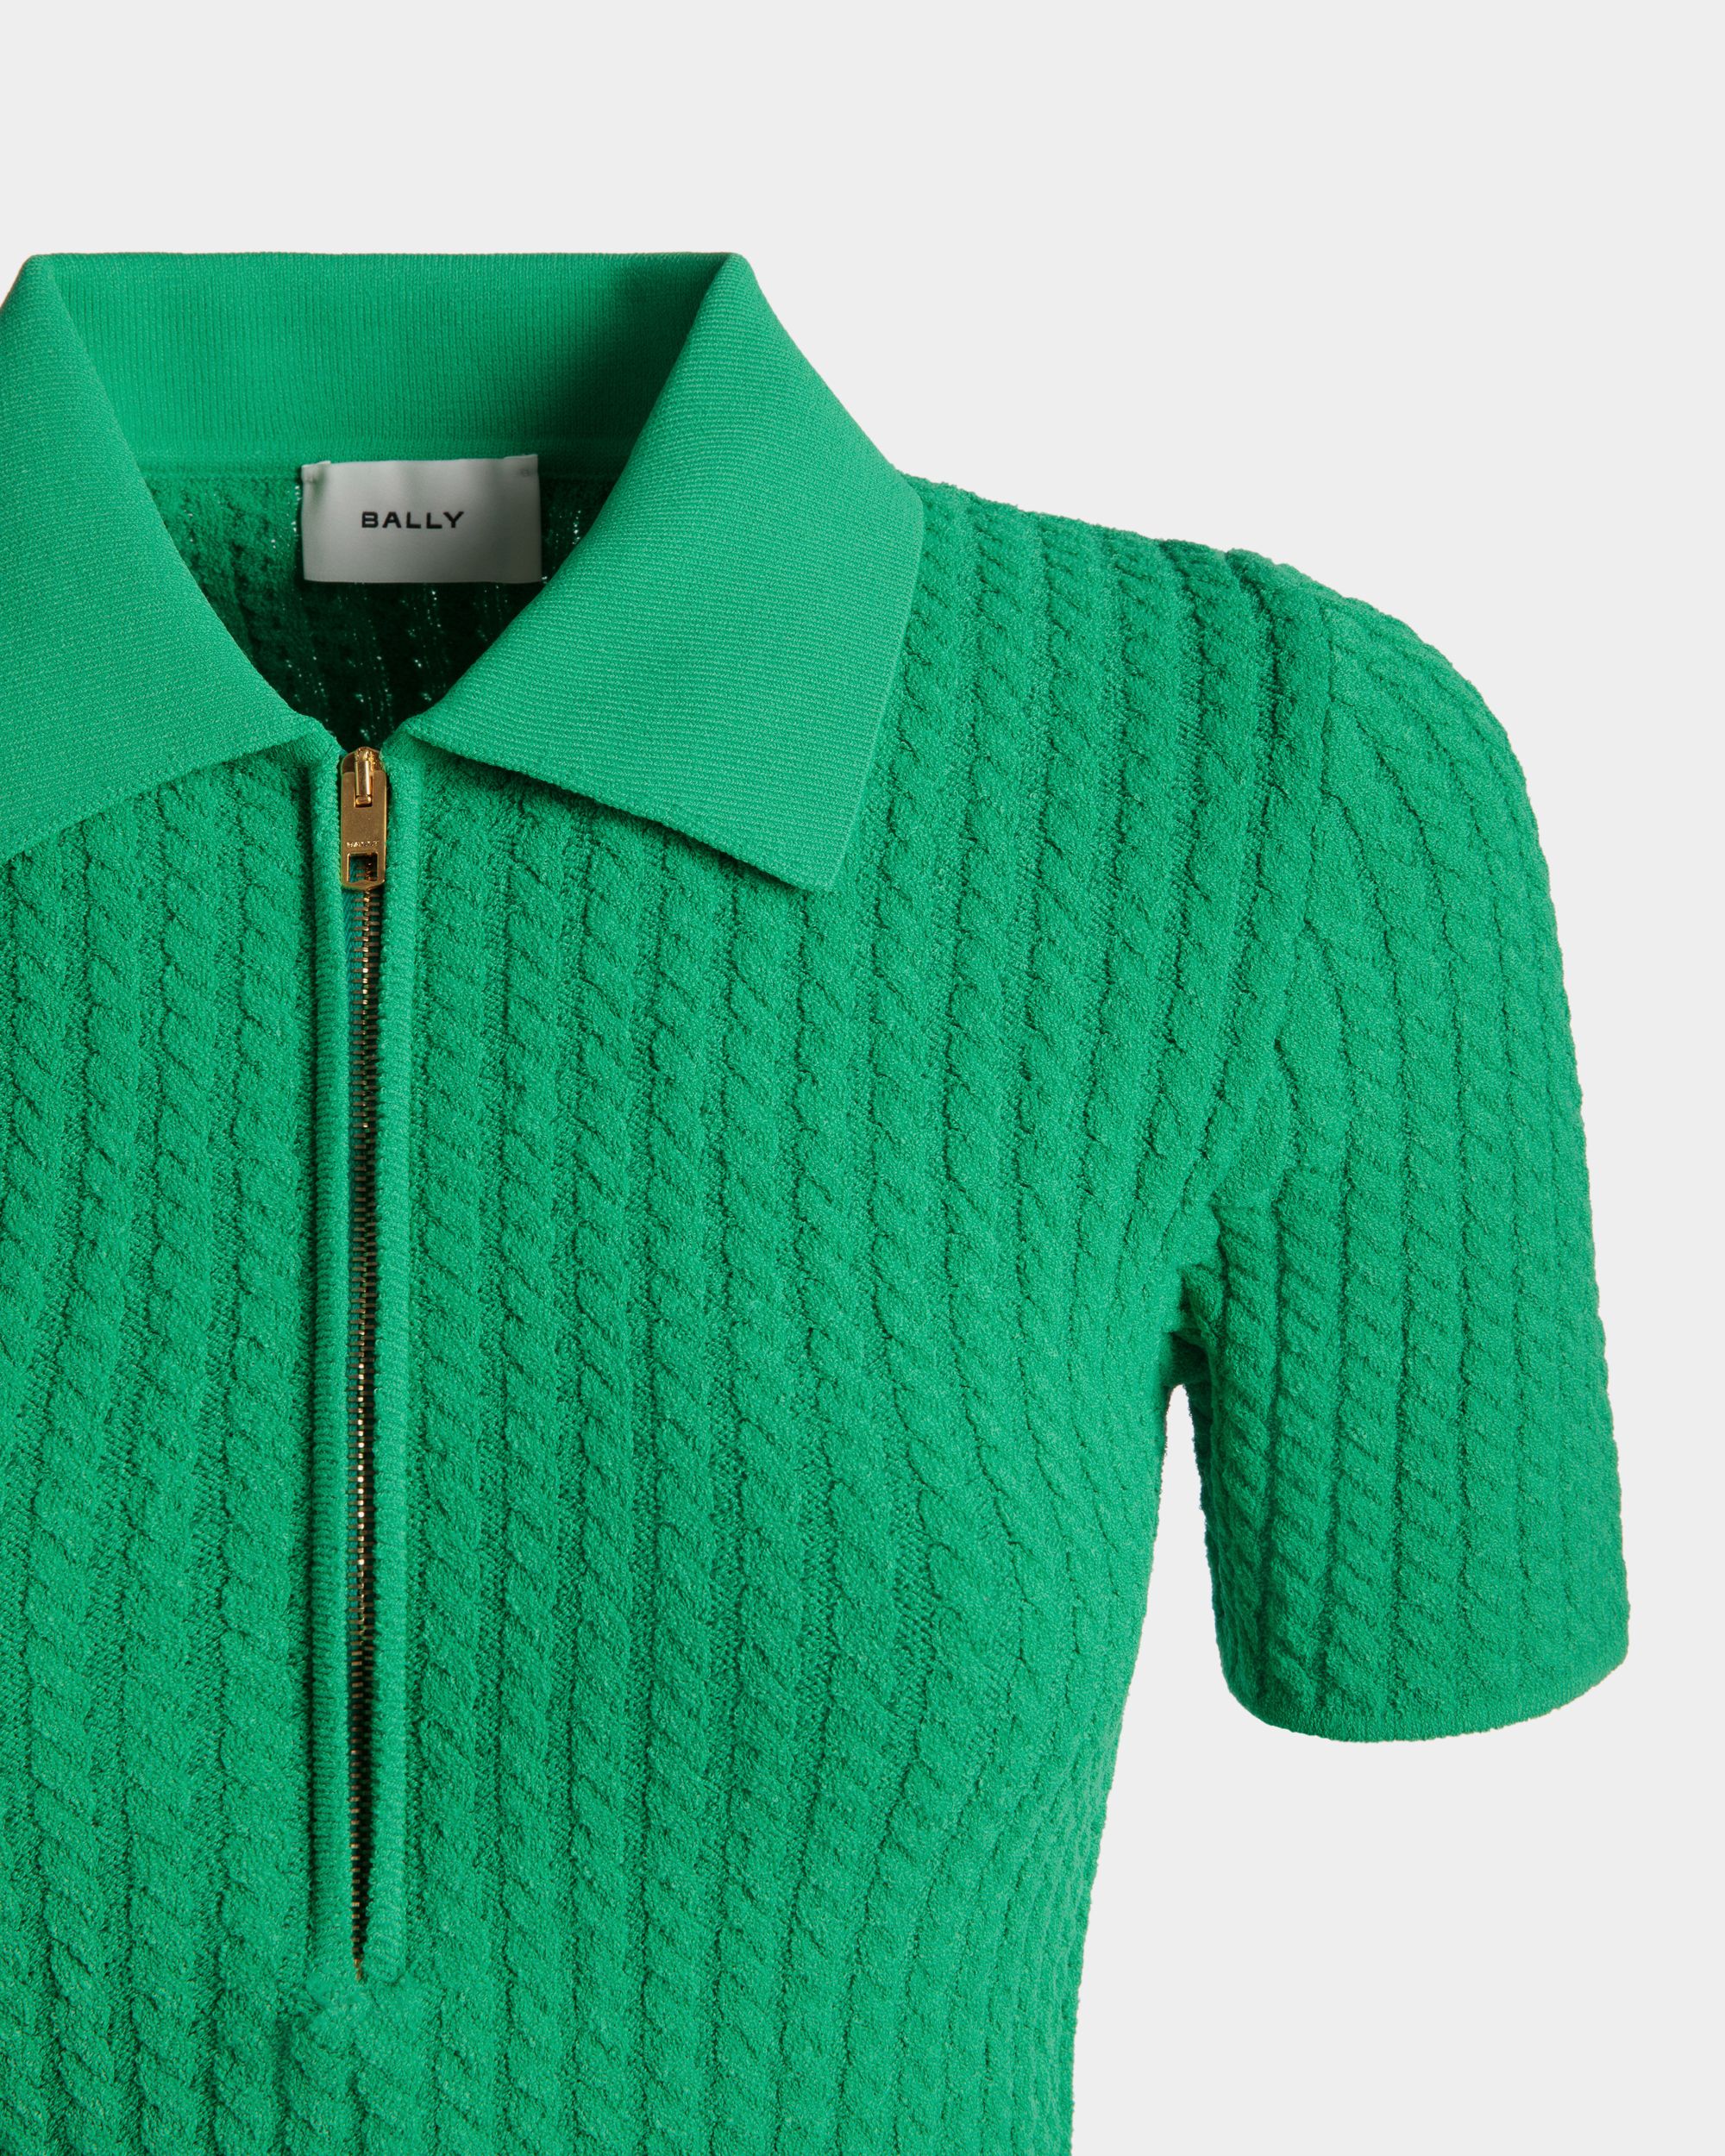 Poloshirt mit halbem Reißverschluss für Damen aus Strickgewebe in Grün | Bally | Model getragen Detail